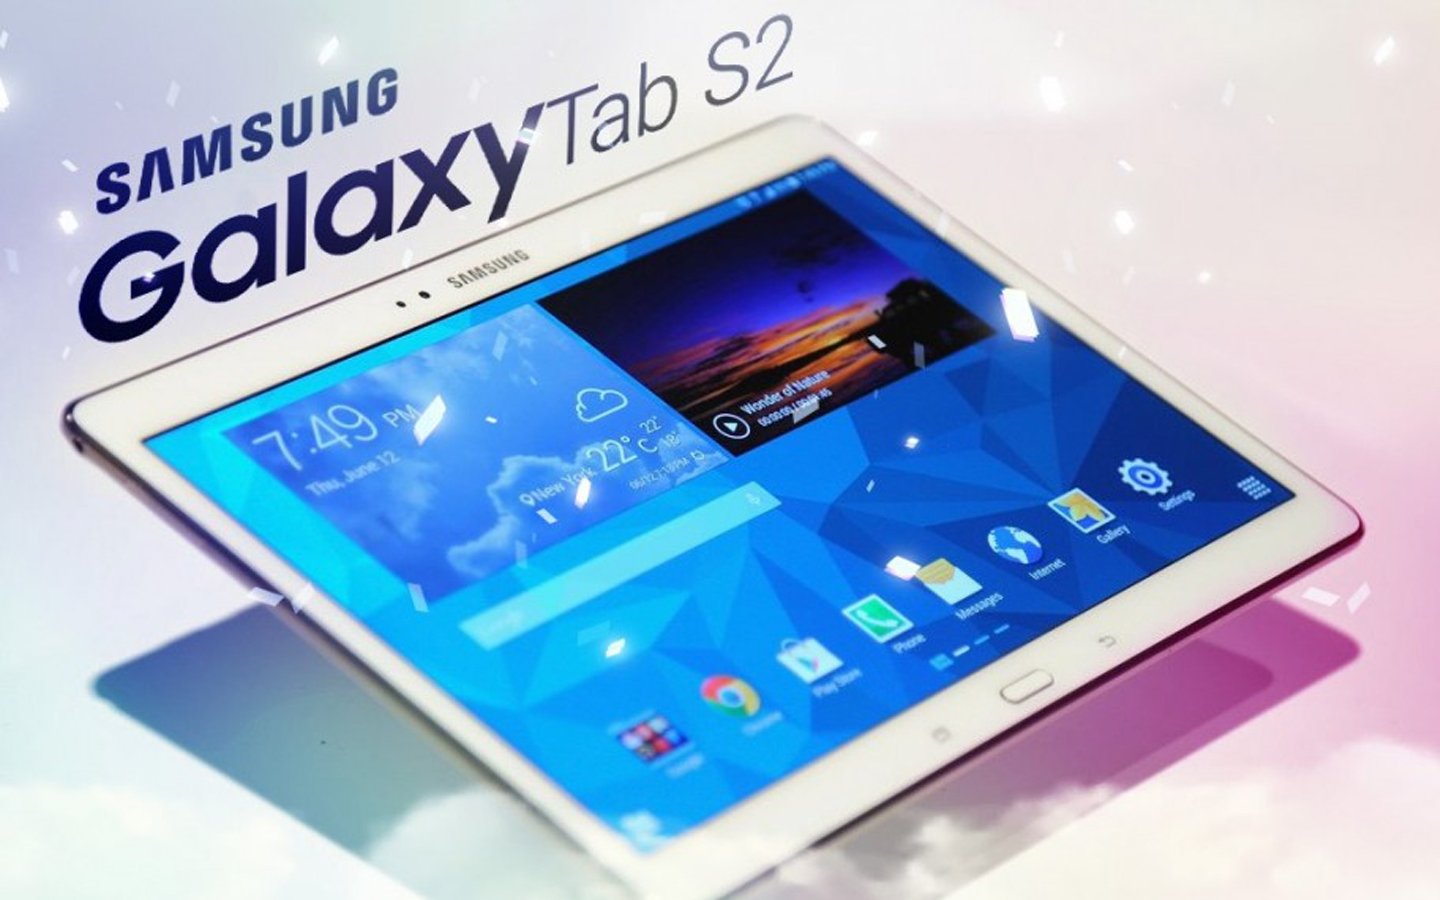 Tablette Samsung Galaxy Tab S2 : les premières images fuitent sur le web